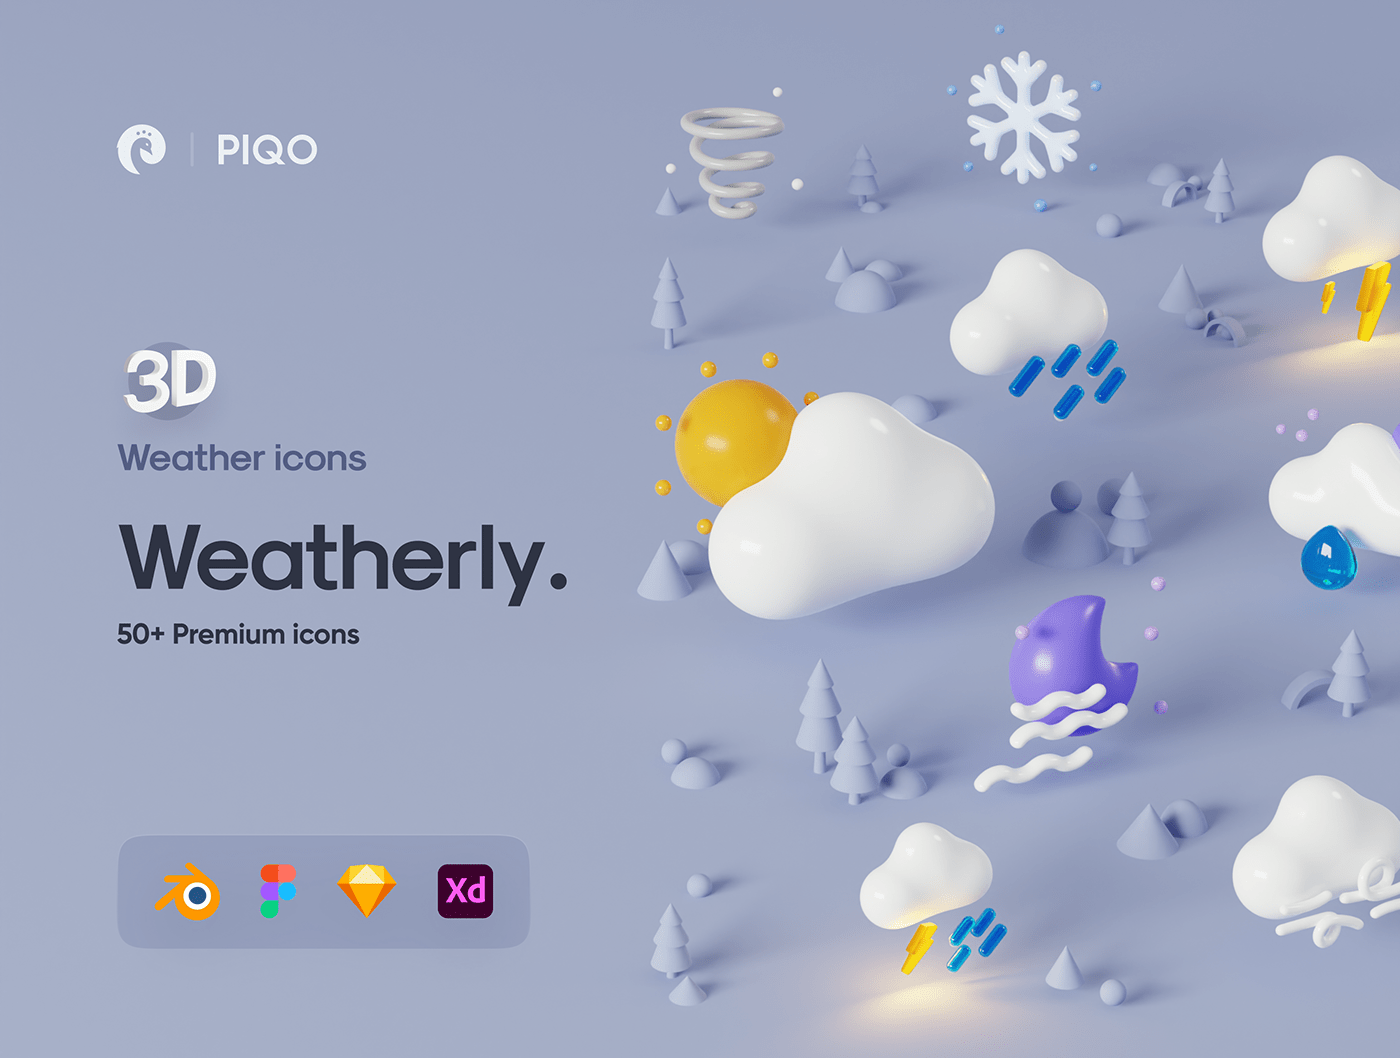 50多个3D高分辨率原始风格和粘土风格完美天气图标包 Weatherly 3D icons – 50+ Weather icons 图标素材 第1张